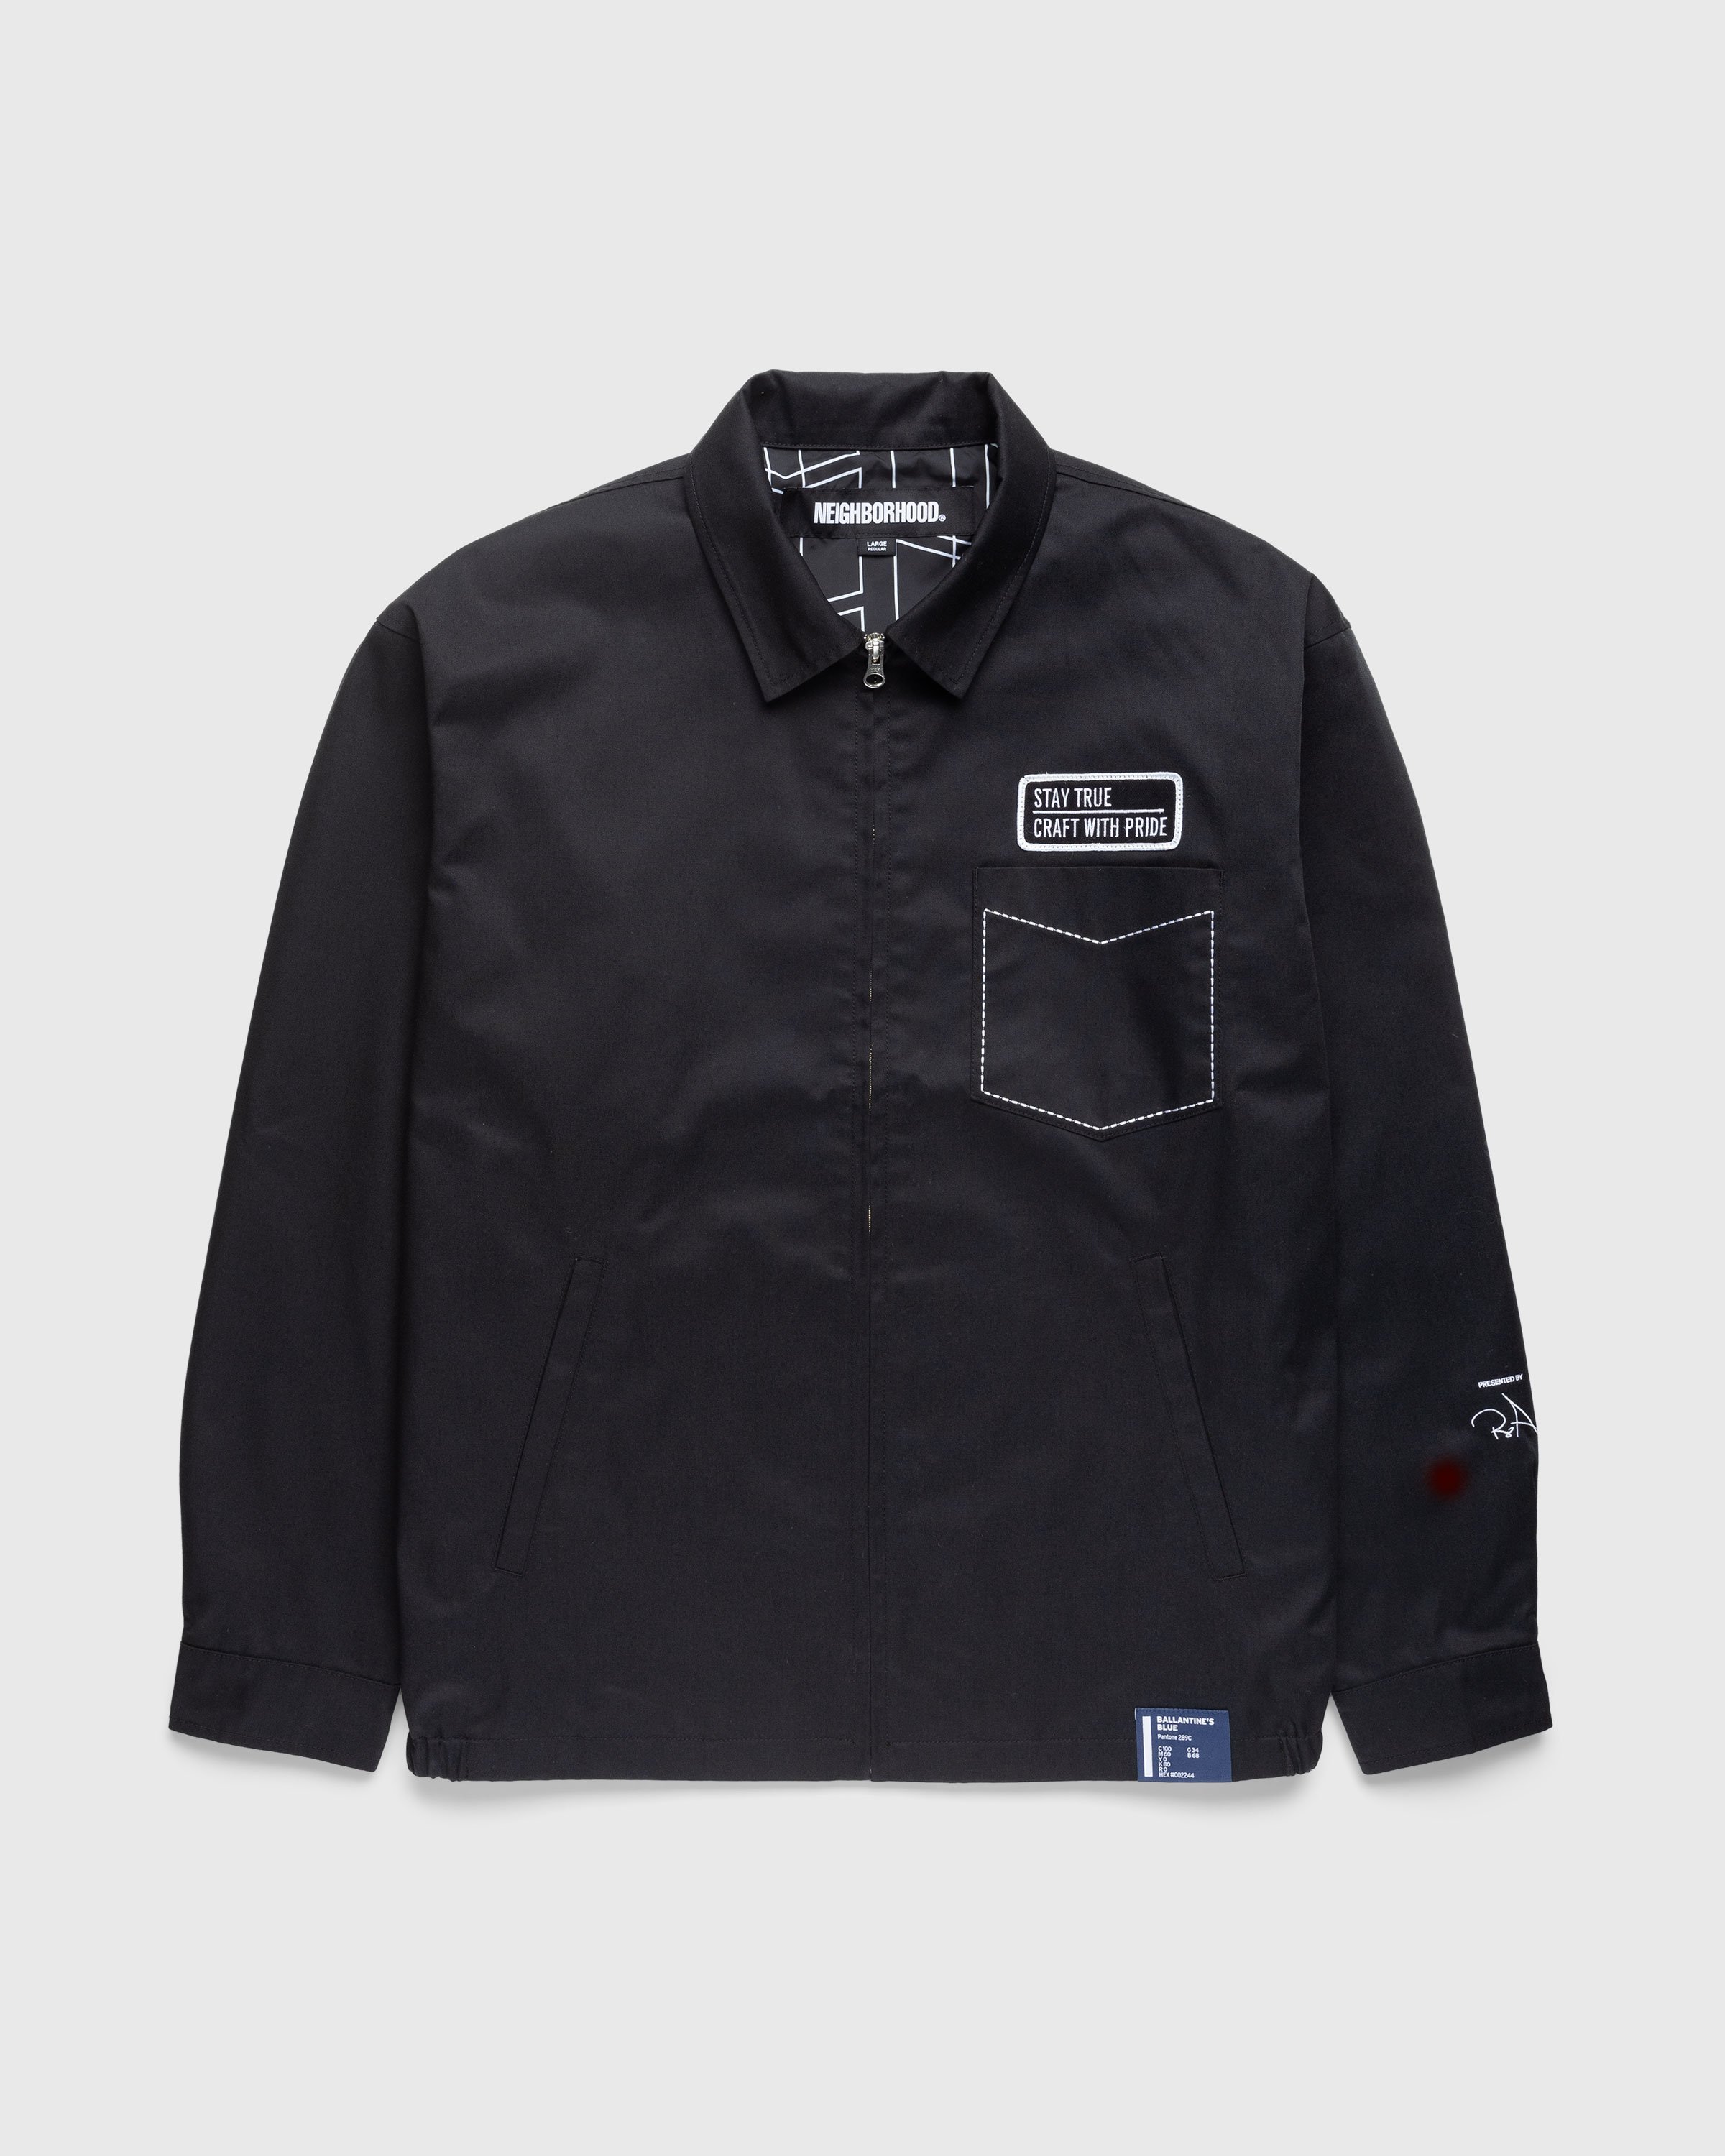 Ballantine's x NEIGHBORHOOD. - Zip Work Jacket Black - Clothing - Black - Image 2